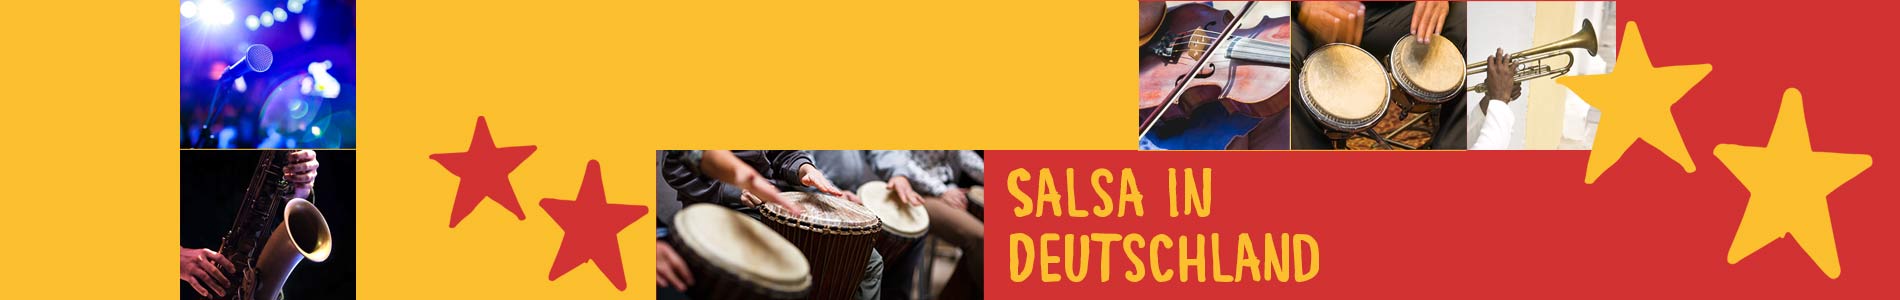 Salsa in Bühlertal – Salsa lernen und tanzen, Tanzkurse, Partys, Veranstaltungen